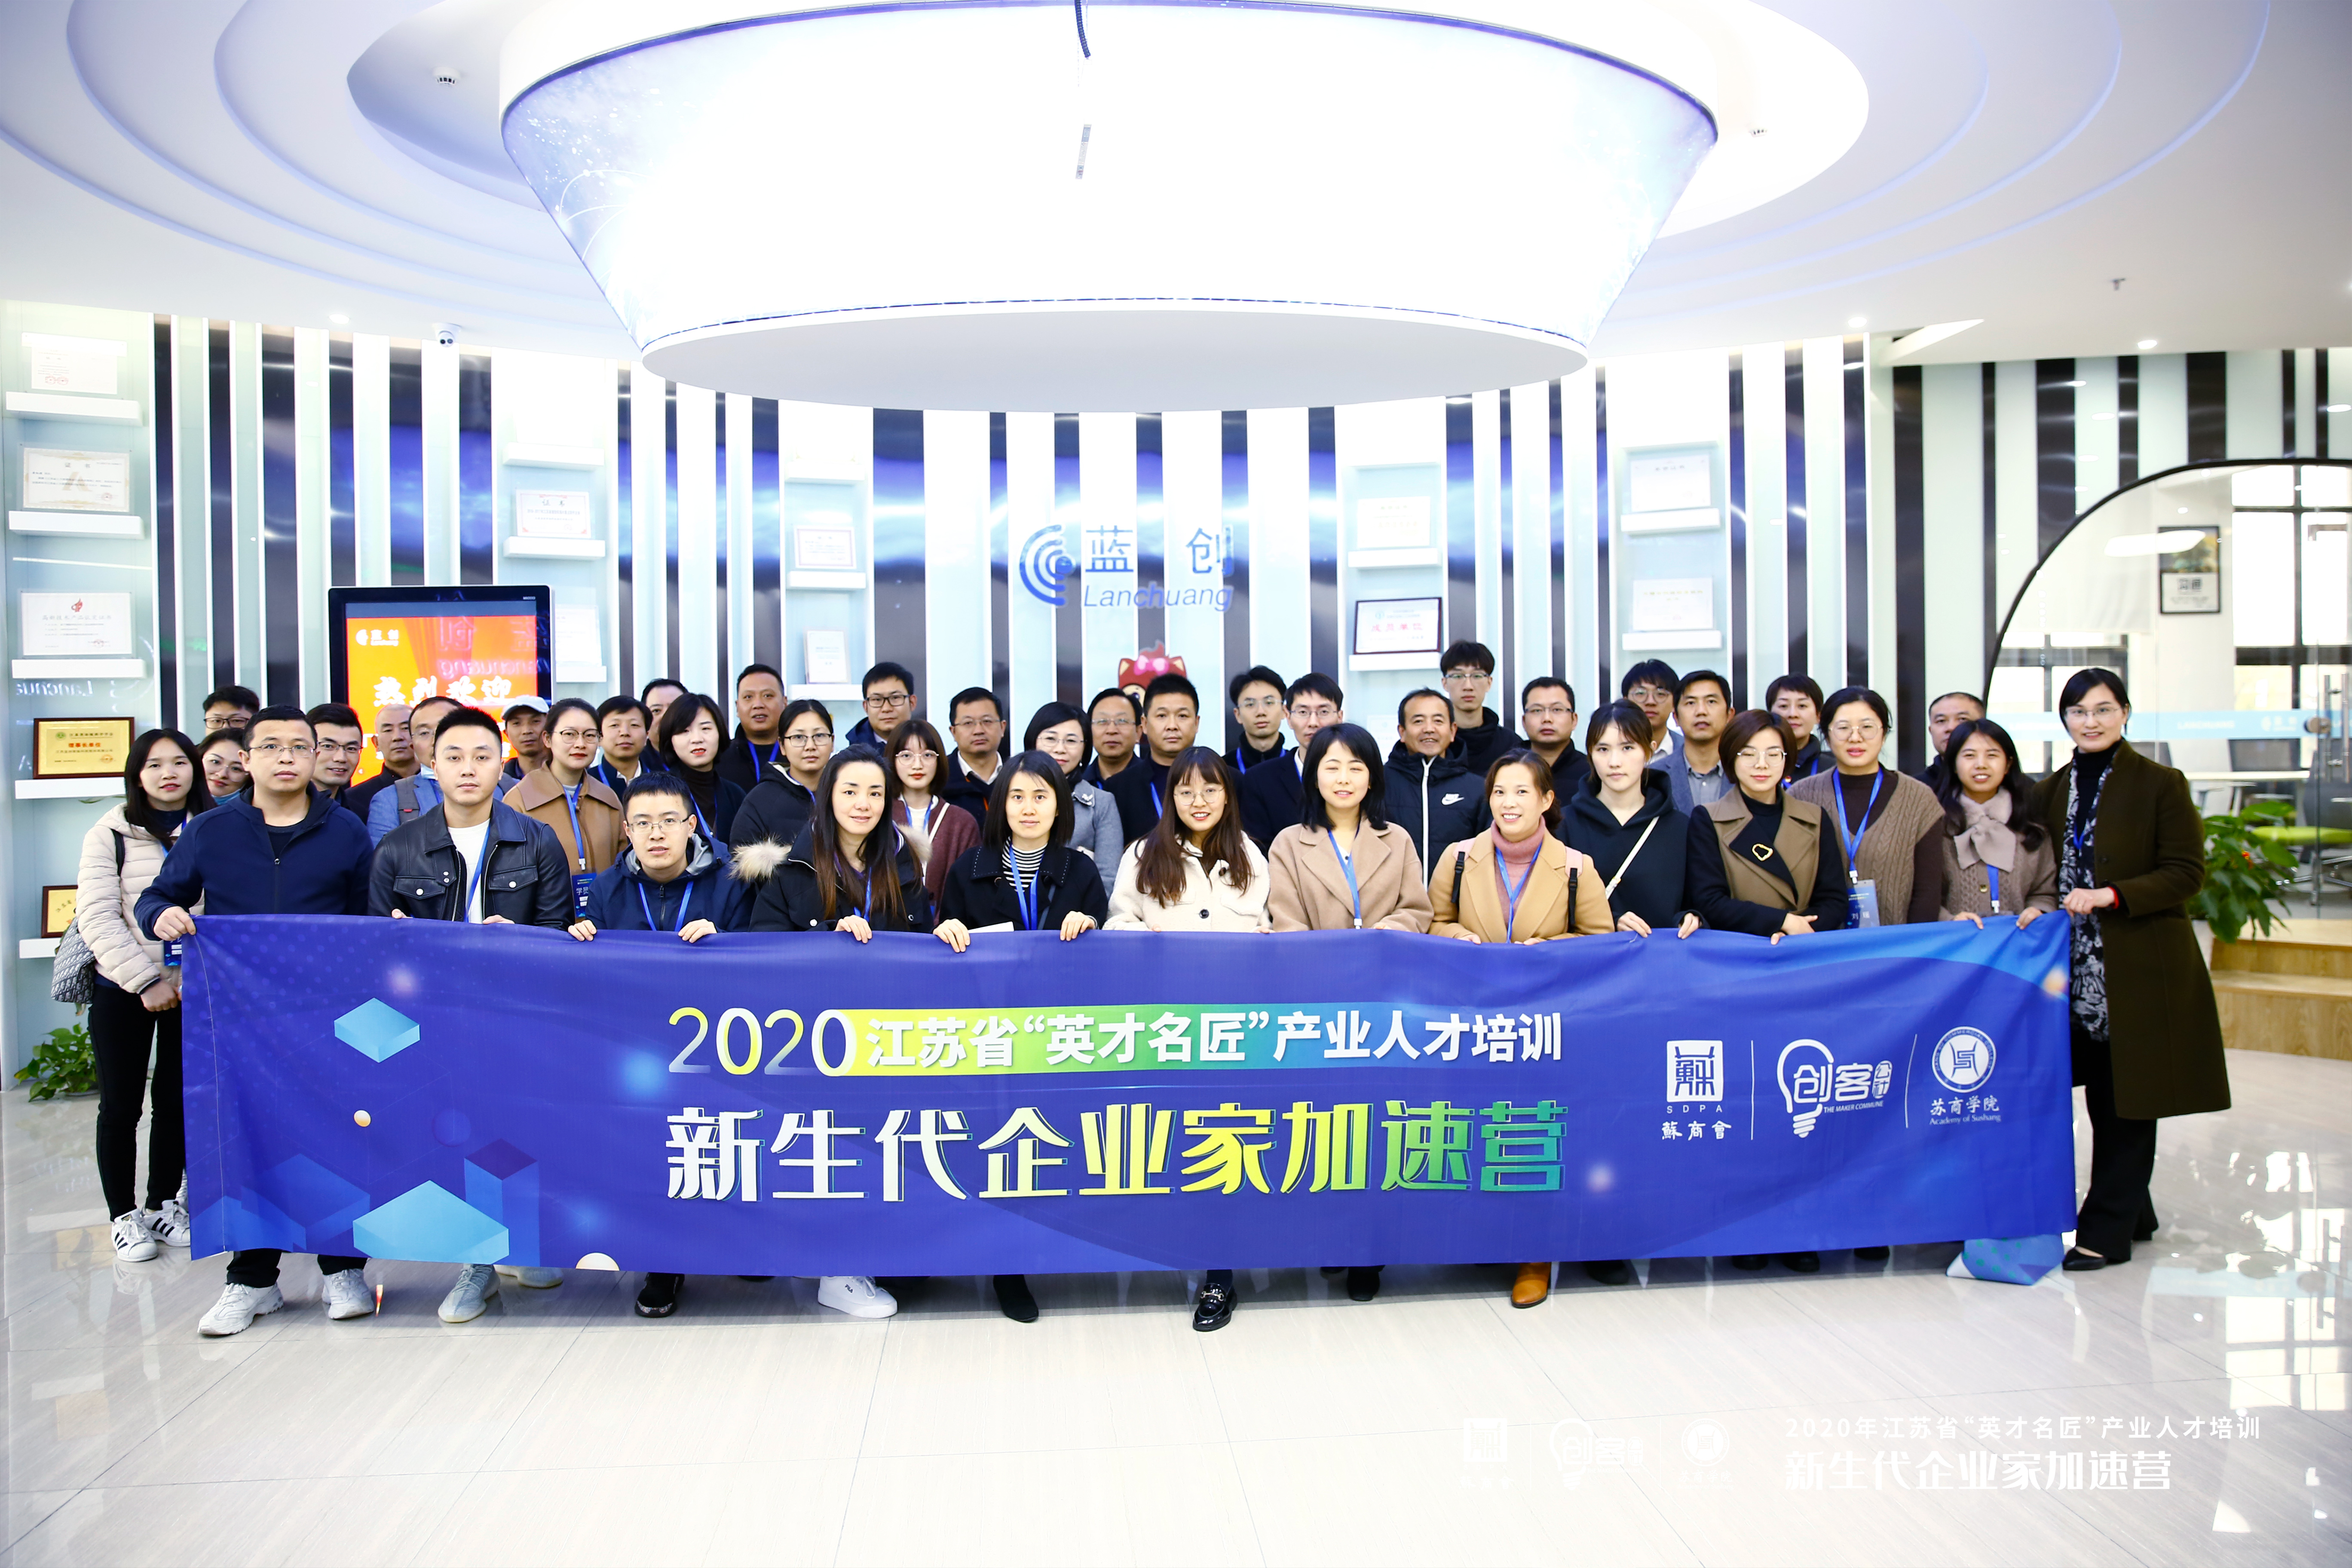 کمپ تسریع دوره آموزشی برای کارآفرینان نسل جدید جیانگسو جنوبی